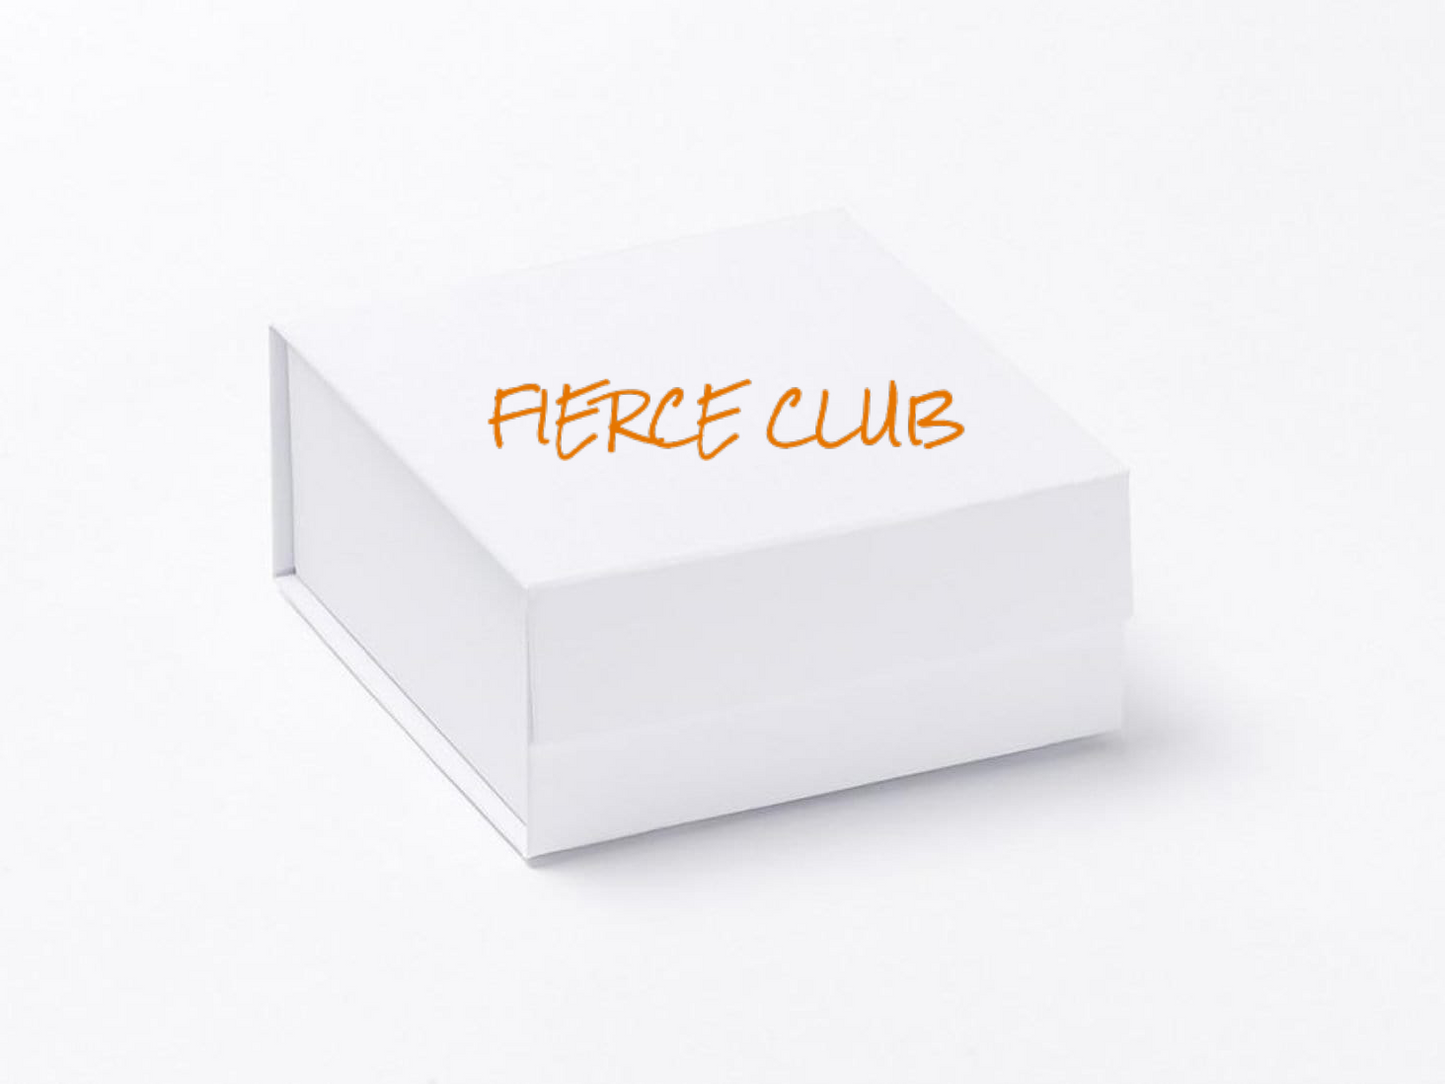 Fierce Club Box